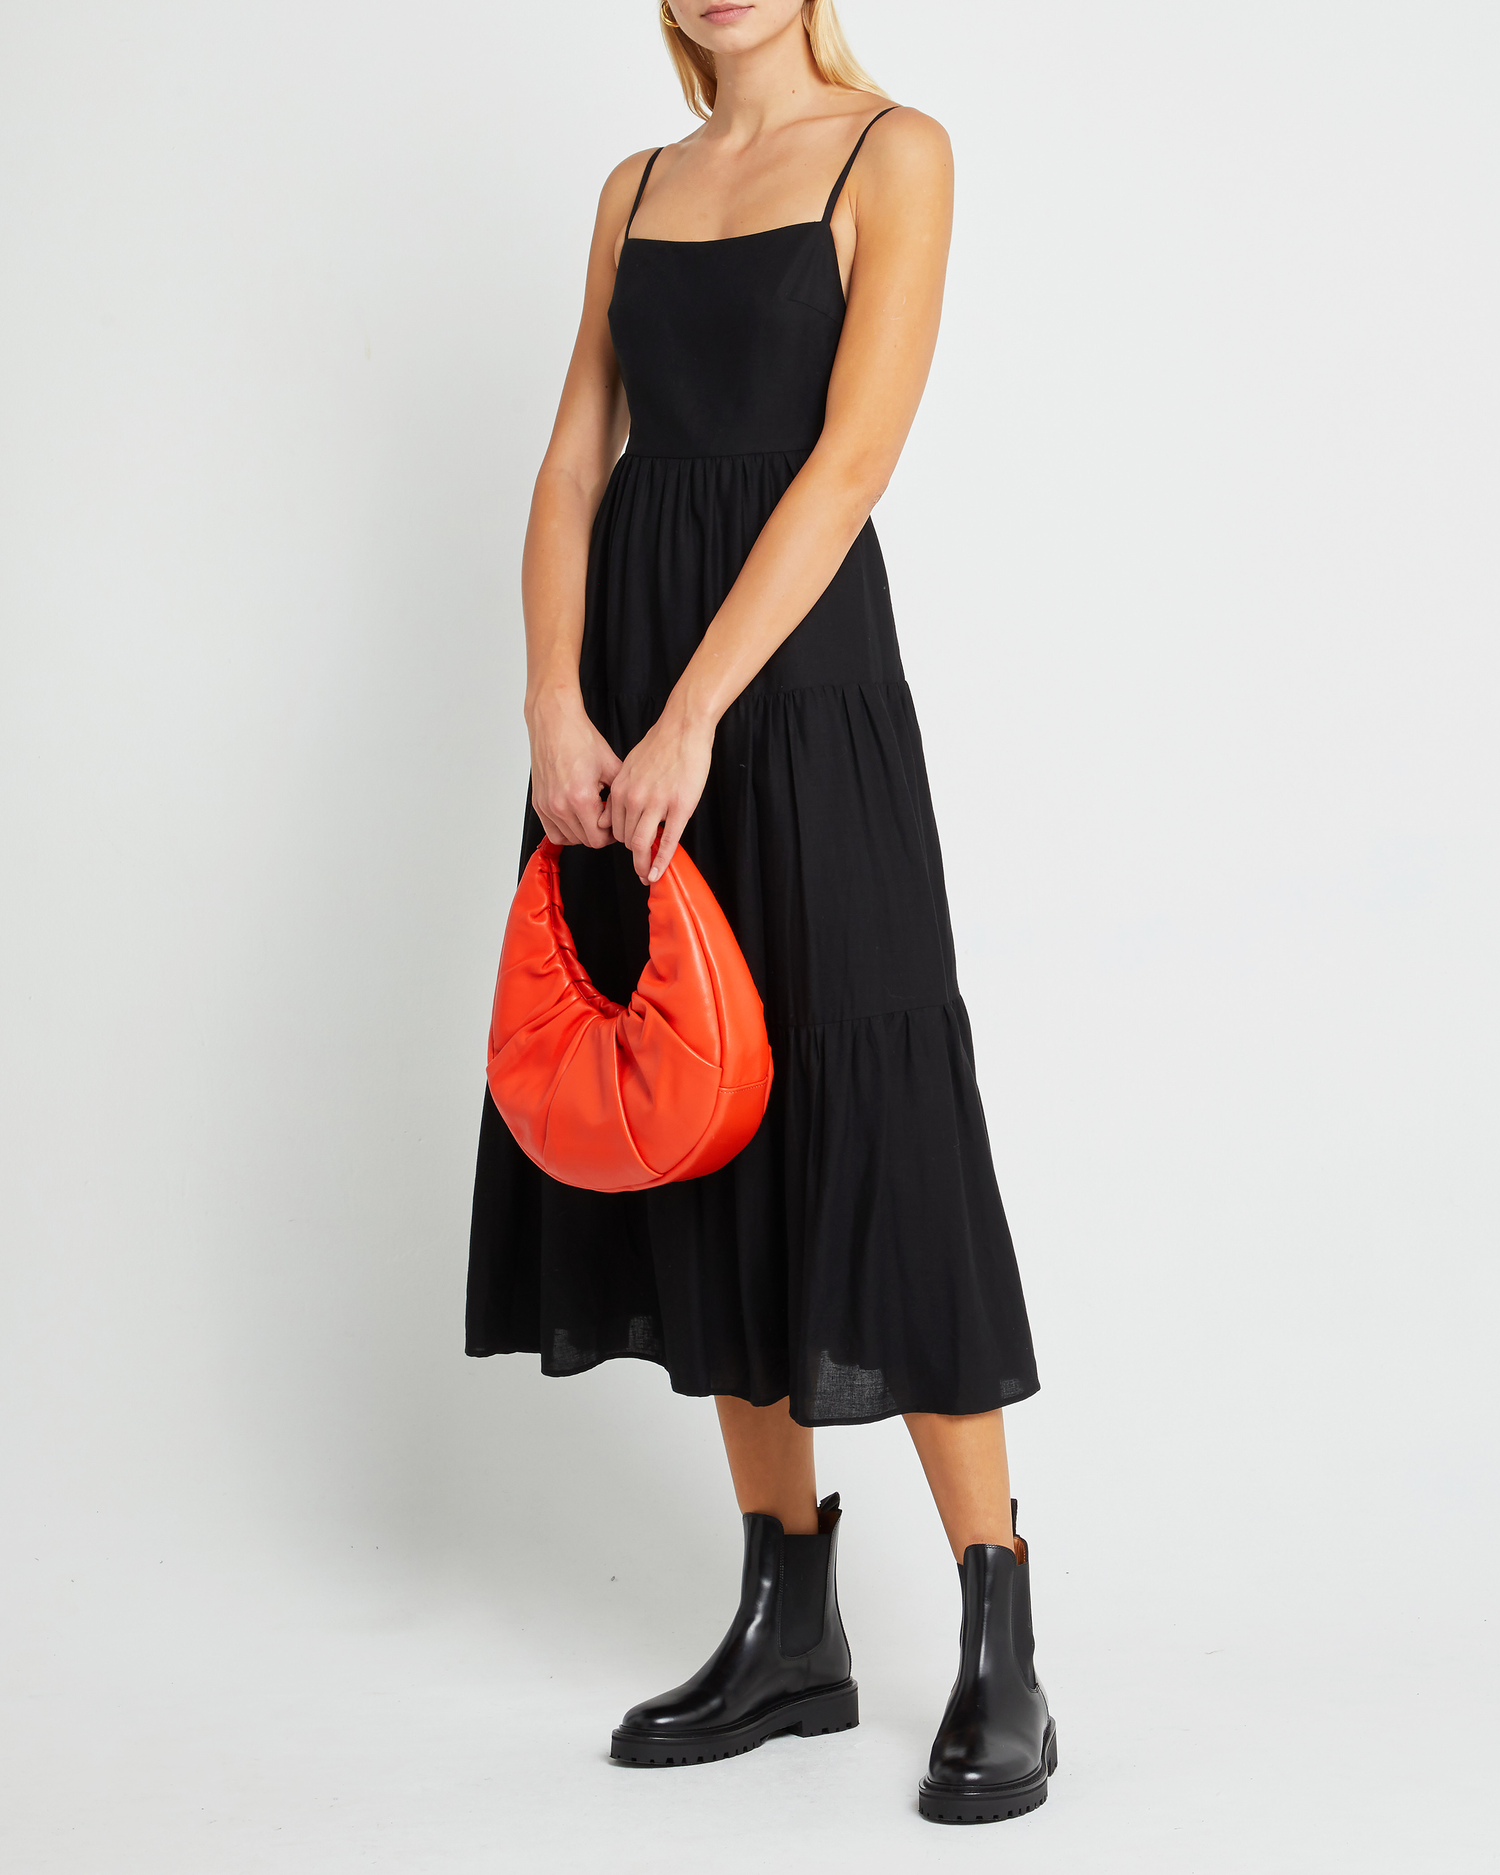 Fourth image of Coco Dress, a black midi dress, open back, spaghetti straps